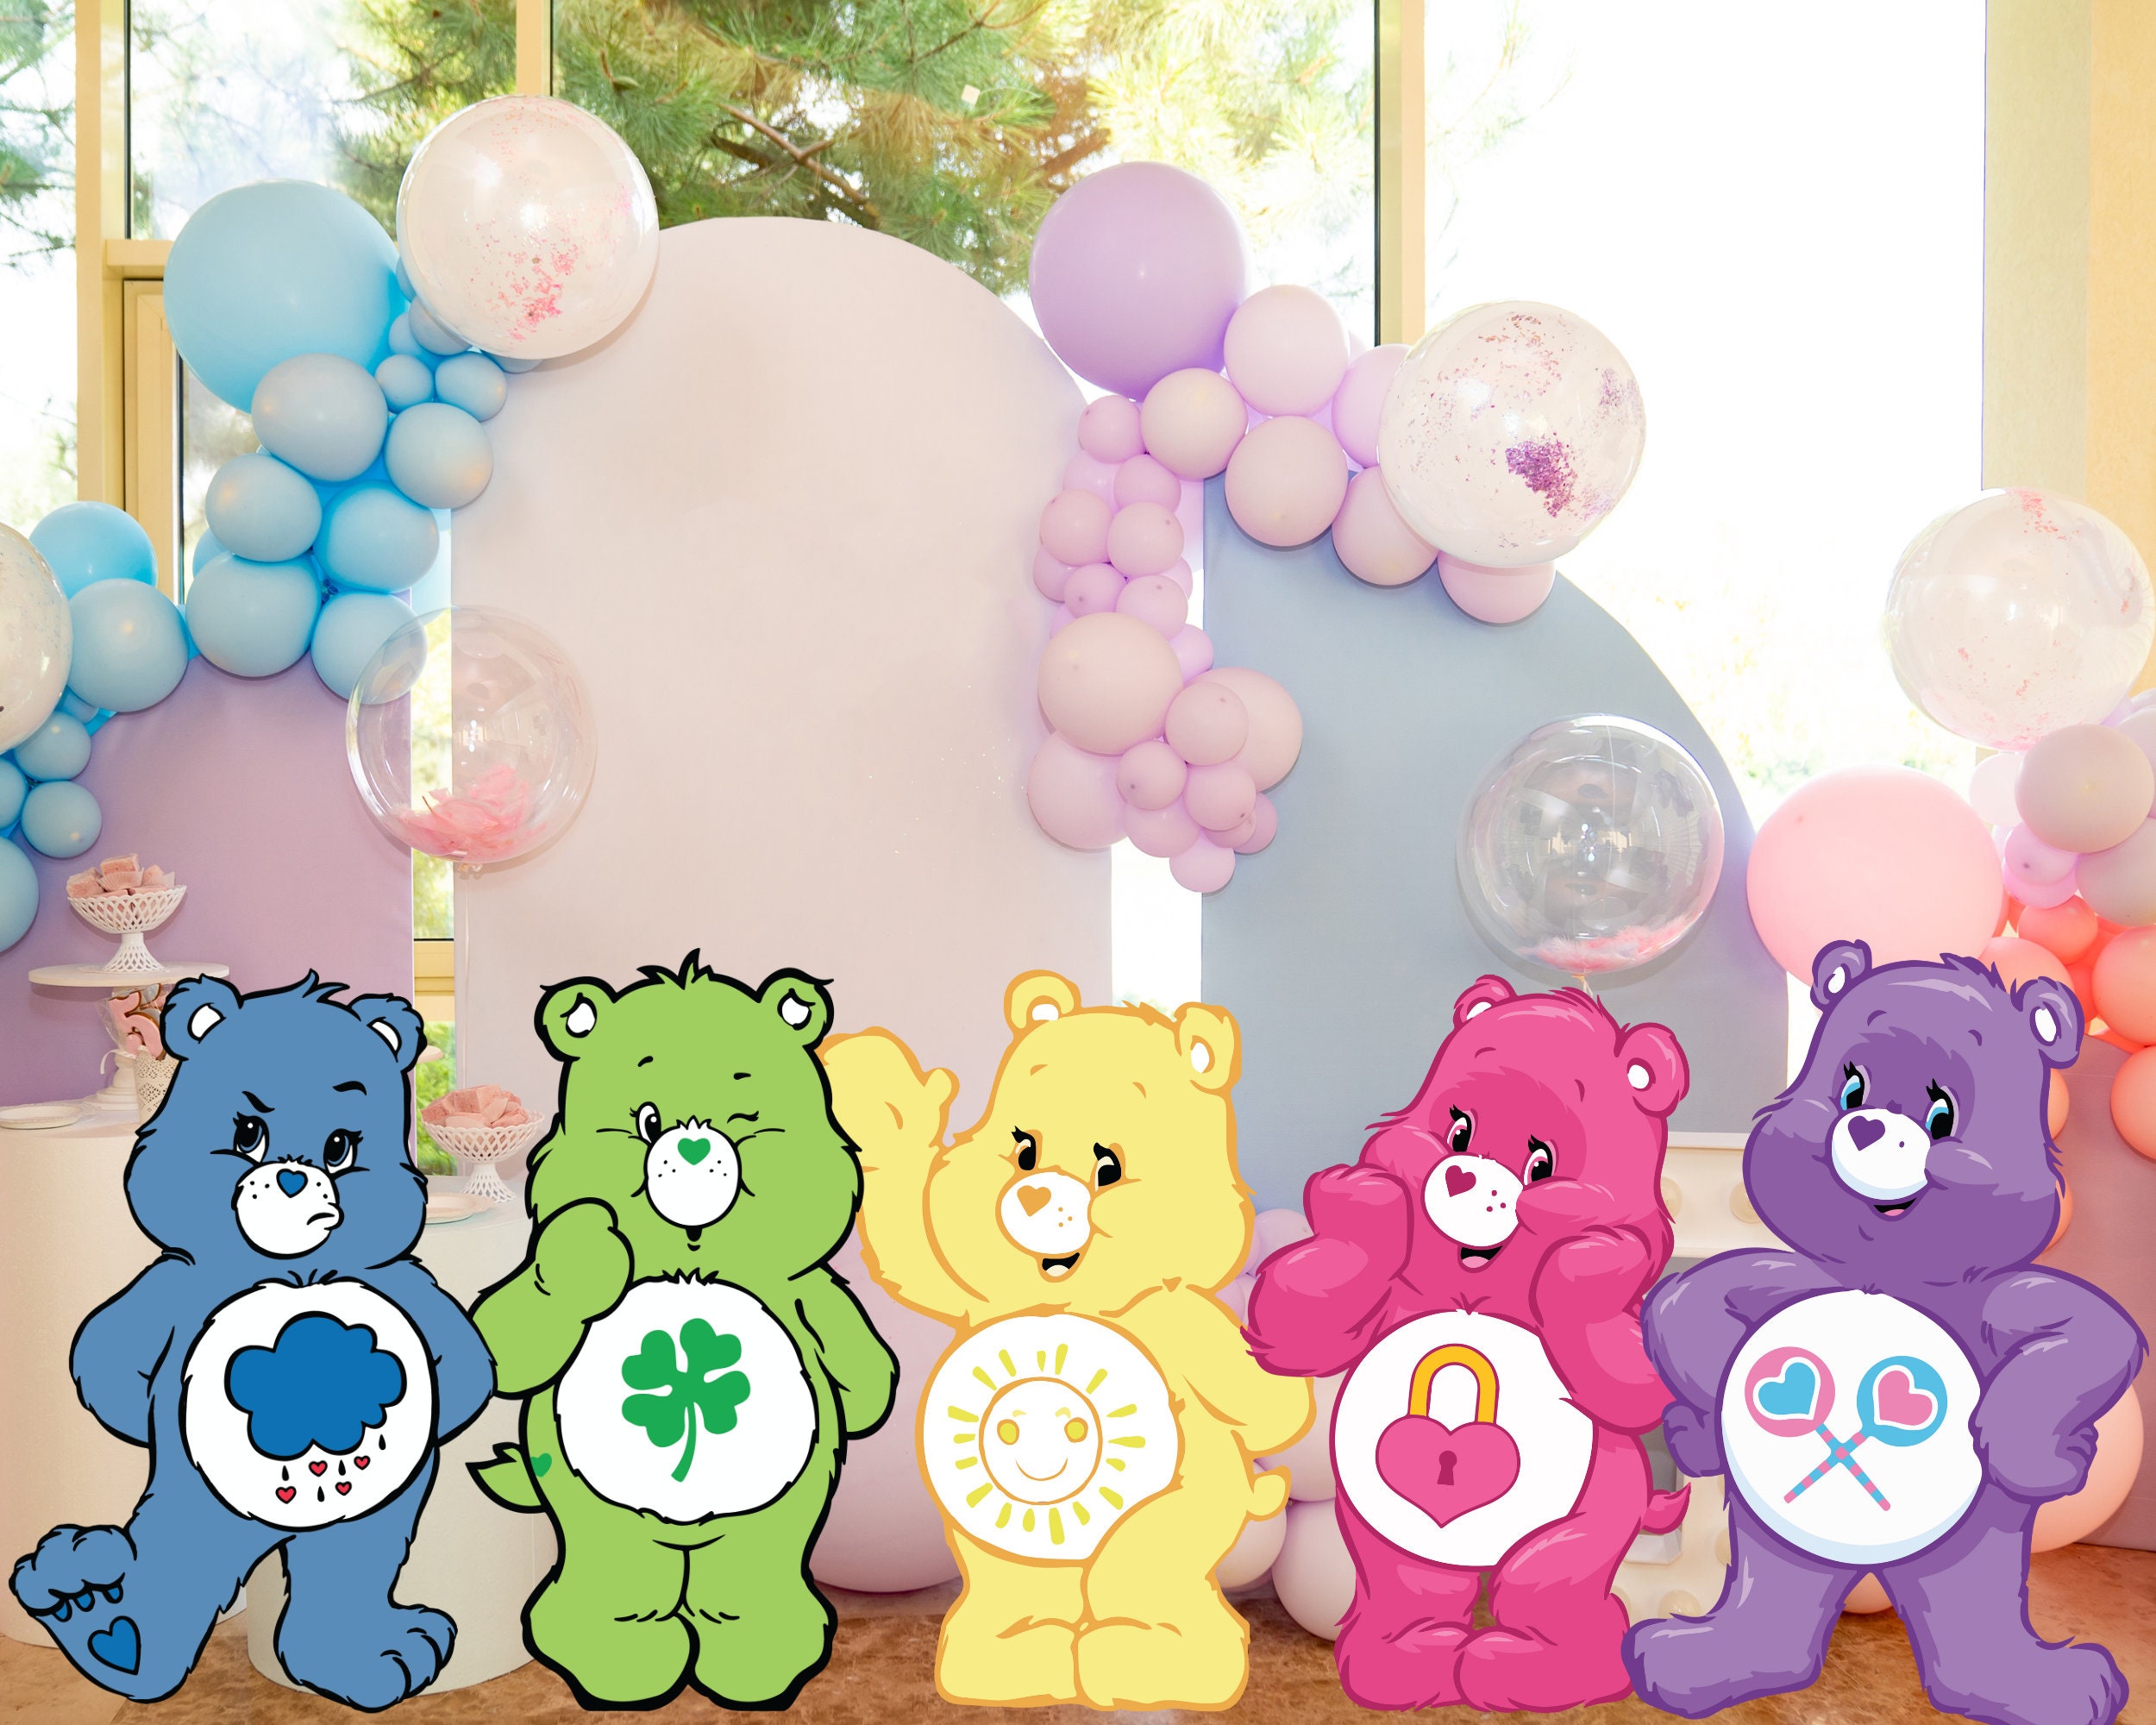 Care Bear Party Ideas for a Girl Birthday